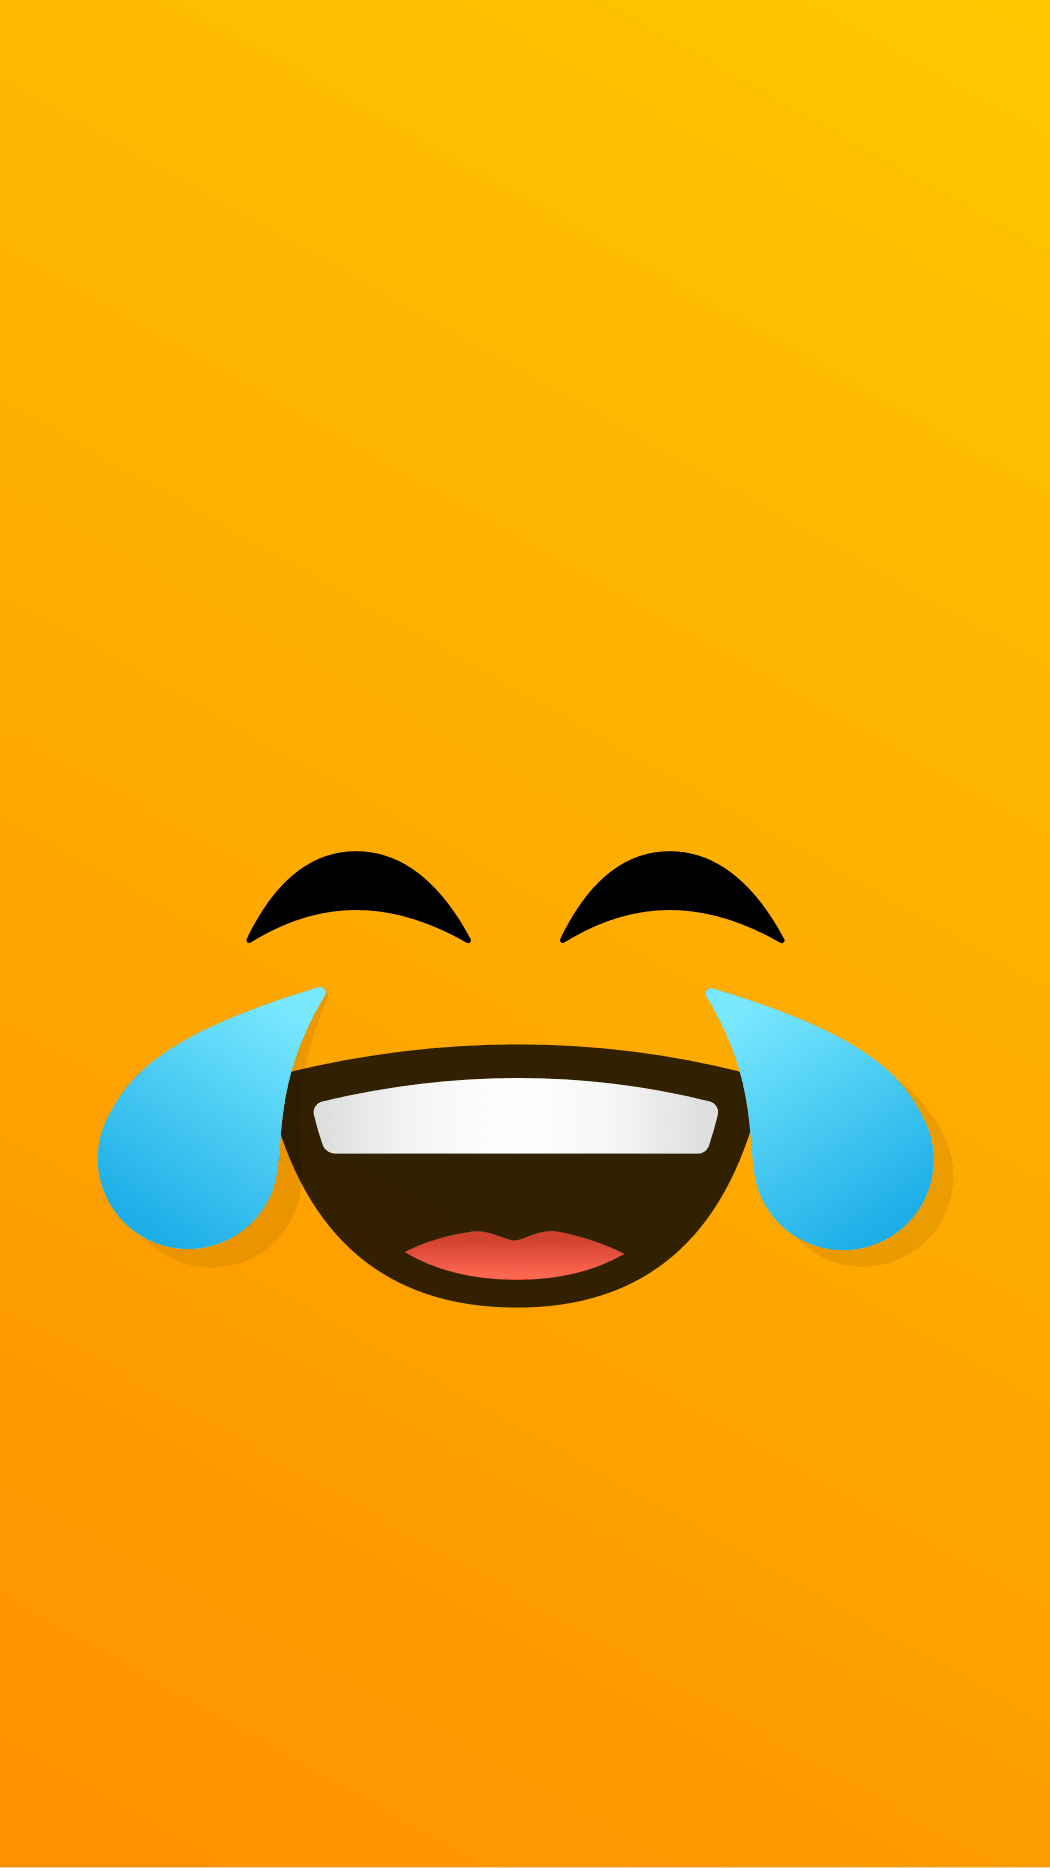 emoji wallpaper, emoticon, yellow, facial expression, cartoon, smile